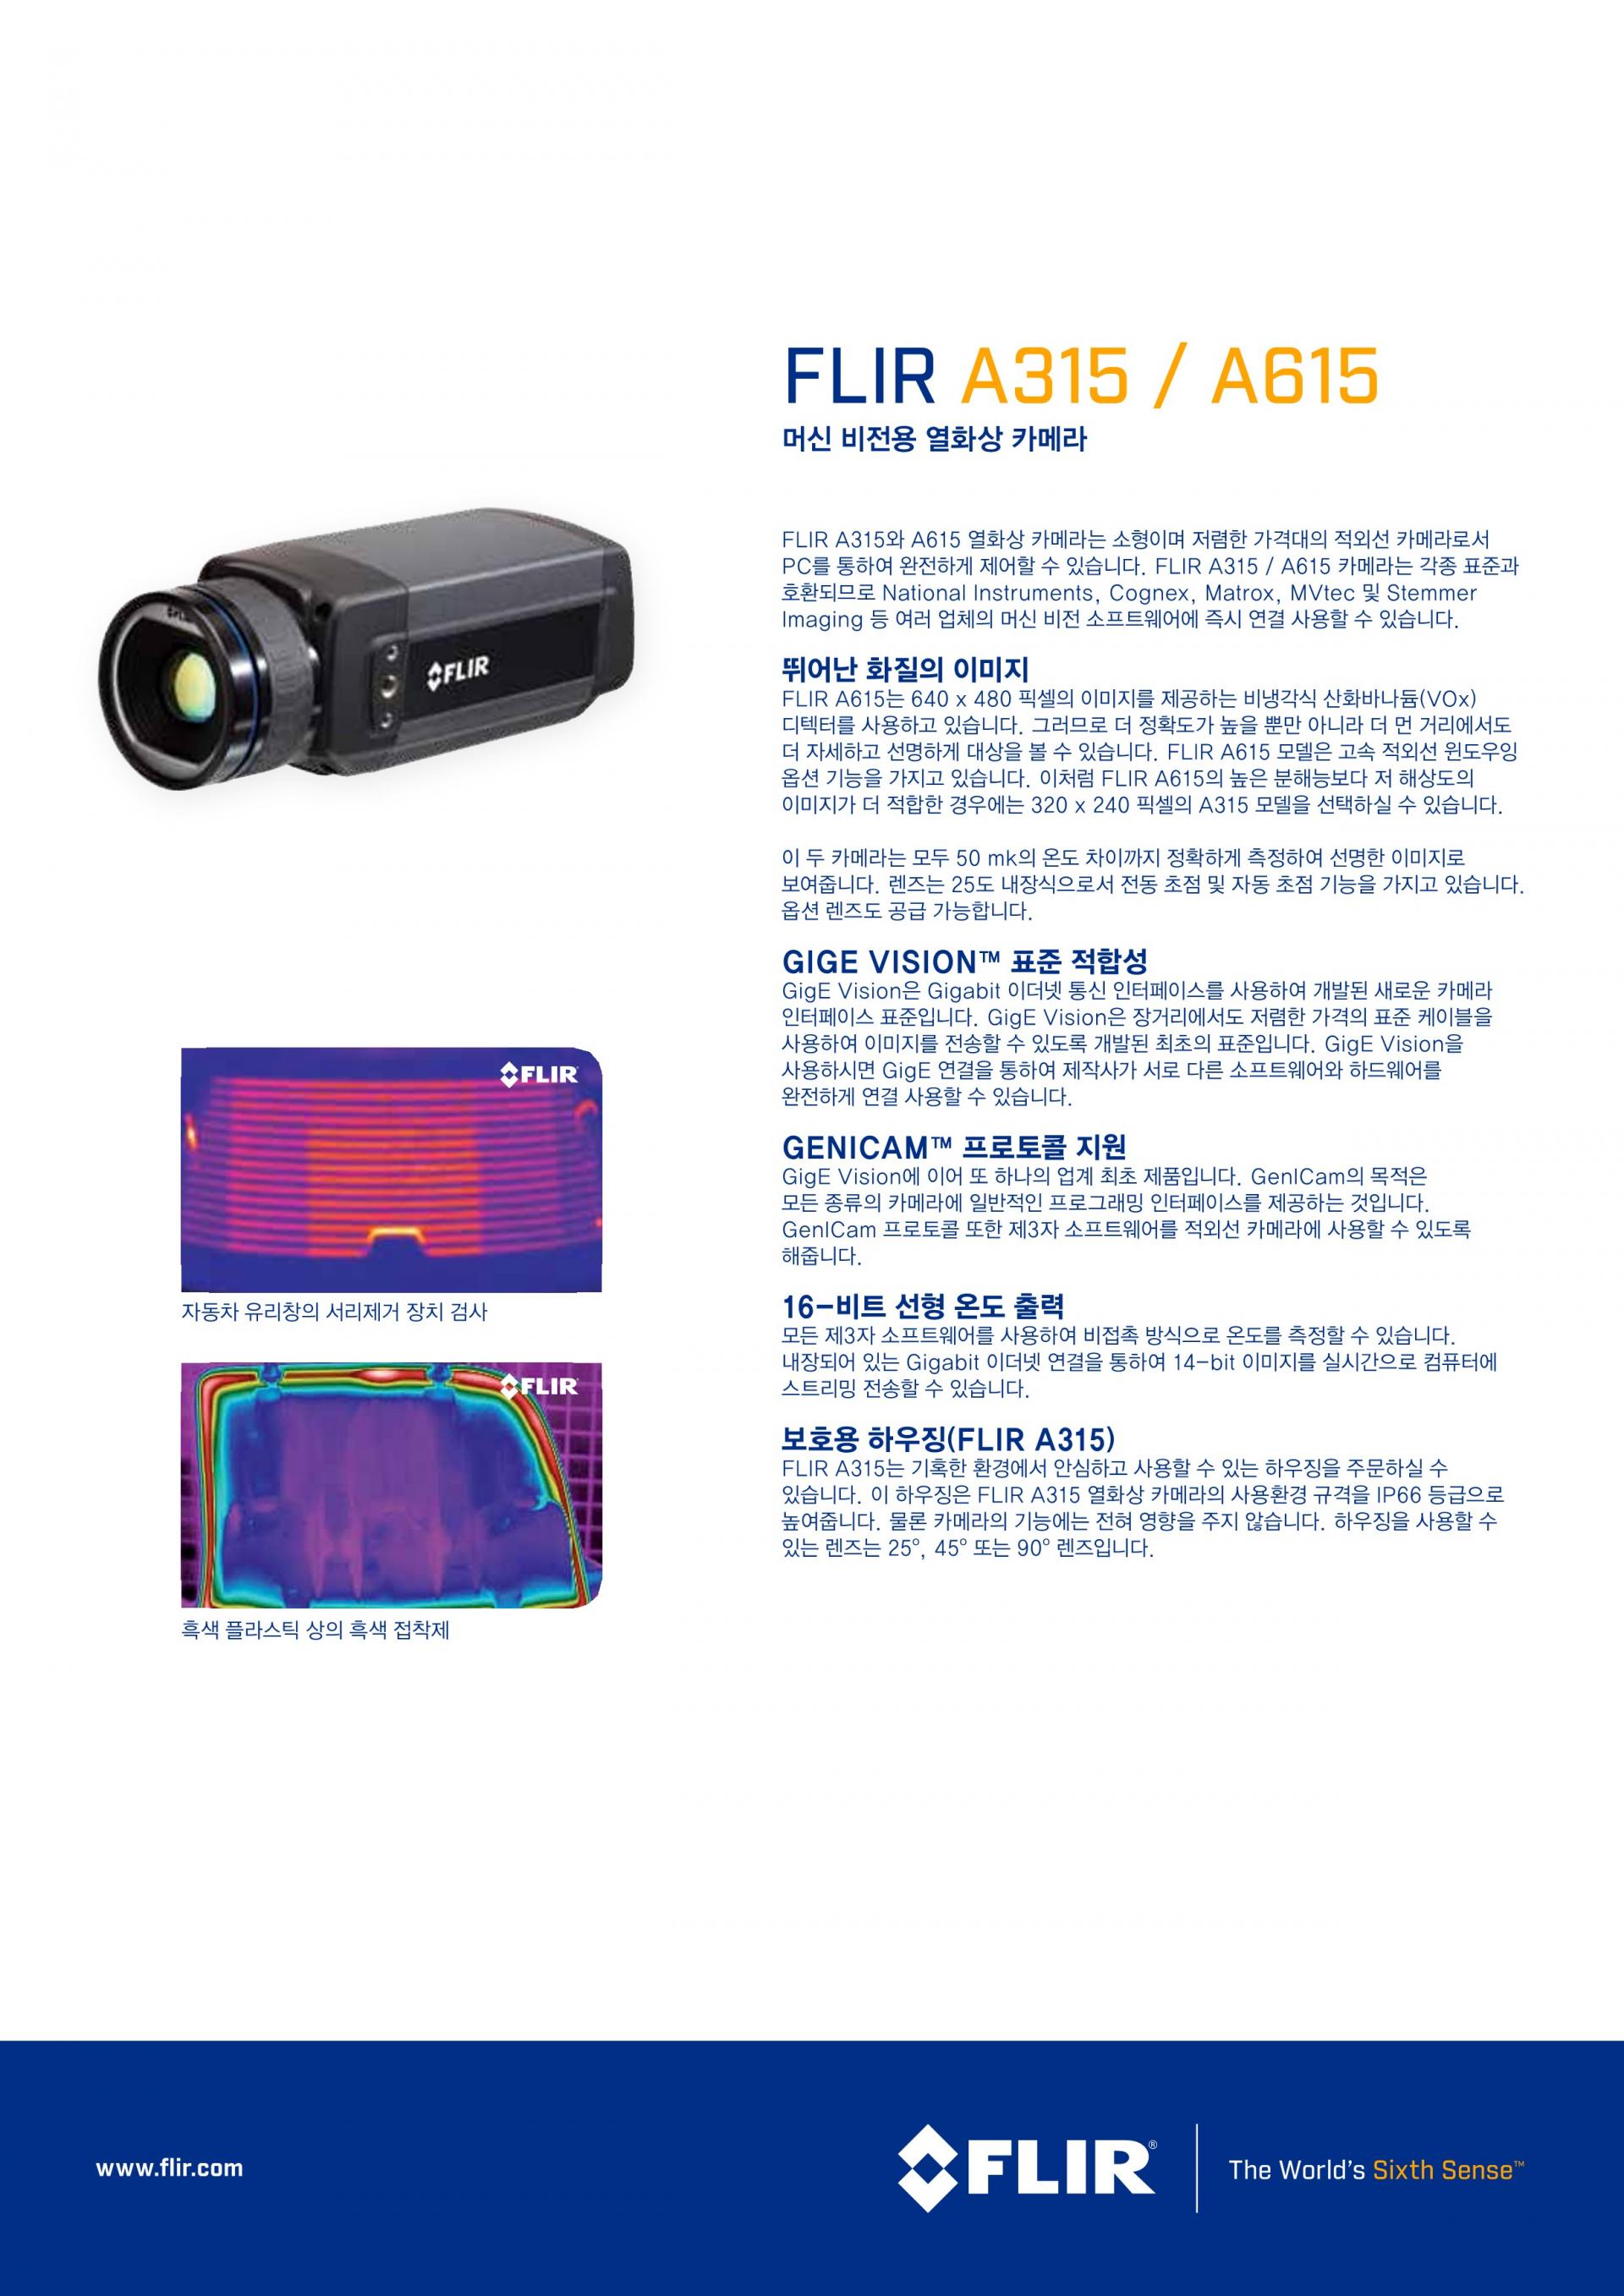 Flir A615 열화상 머신 비전 카메라 : 지니어스인더스트리 - 대한민국 No.1 산업장비 공급채널